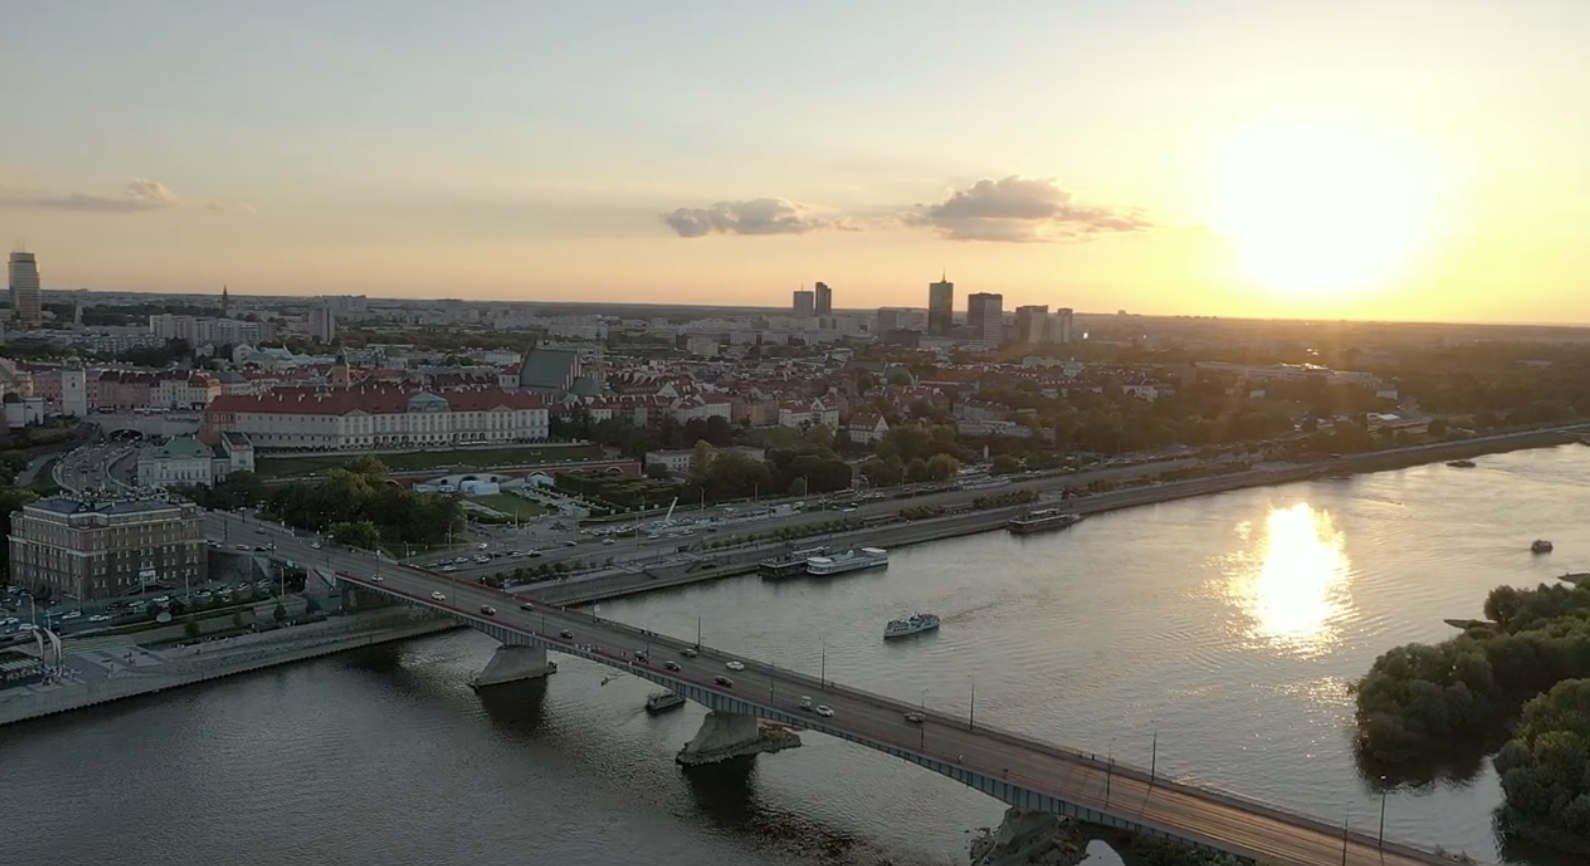 Zobacz wideo podsumowujące XII Kongres Polska Wielki Projekt!